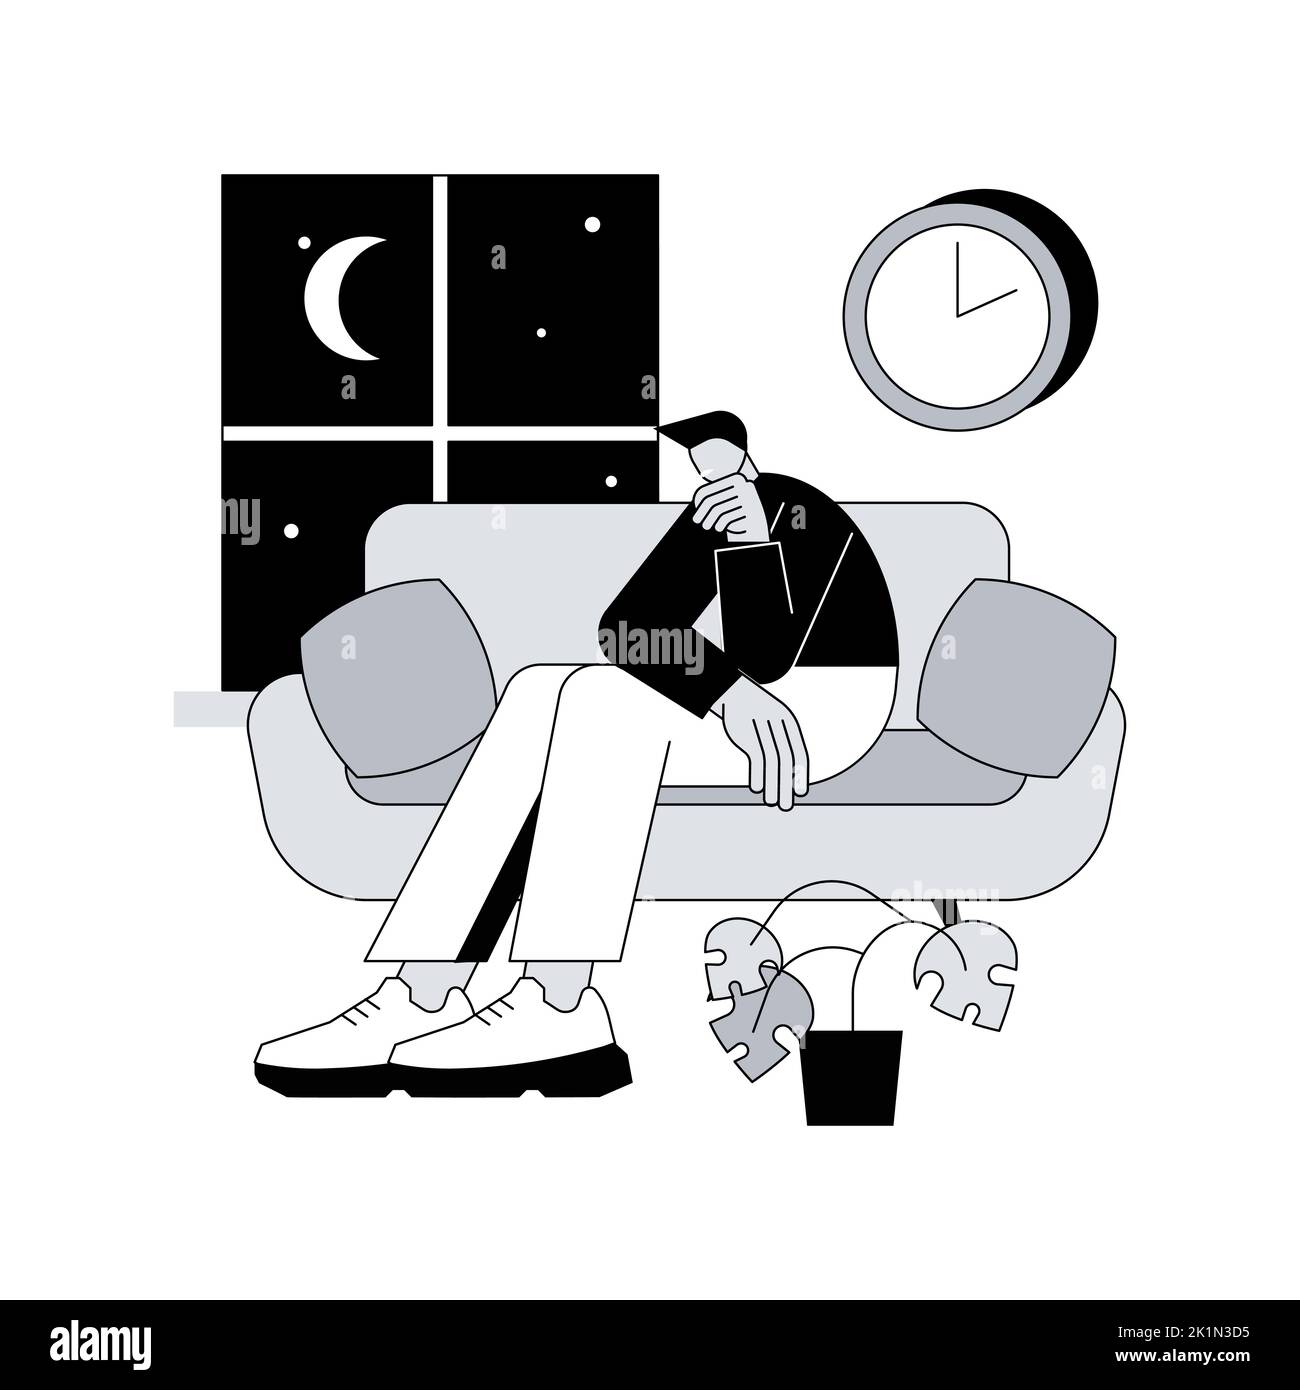 Illustrazione vettoriale astratta del concetto di privazione del sonno. Sintomi di insonnia, perdita del sonno, problema di privazione, salute mentale, causa e trattamento, diagnostica clinica, insonnia metafora astratta. Illustrazione Vettoriale